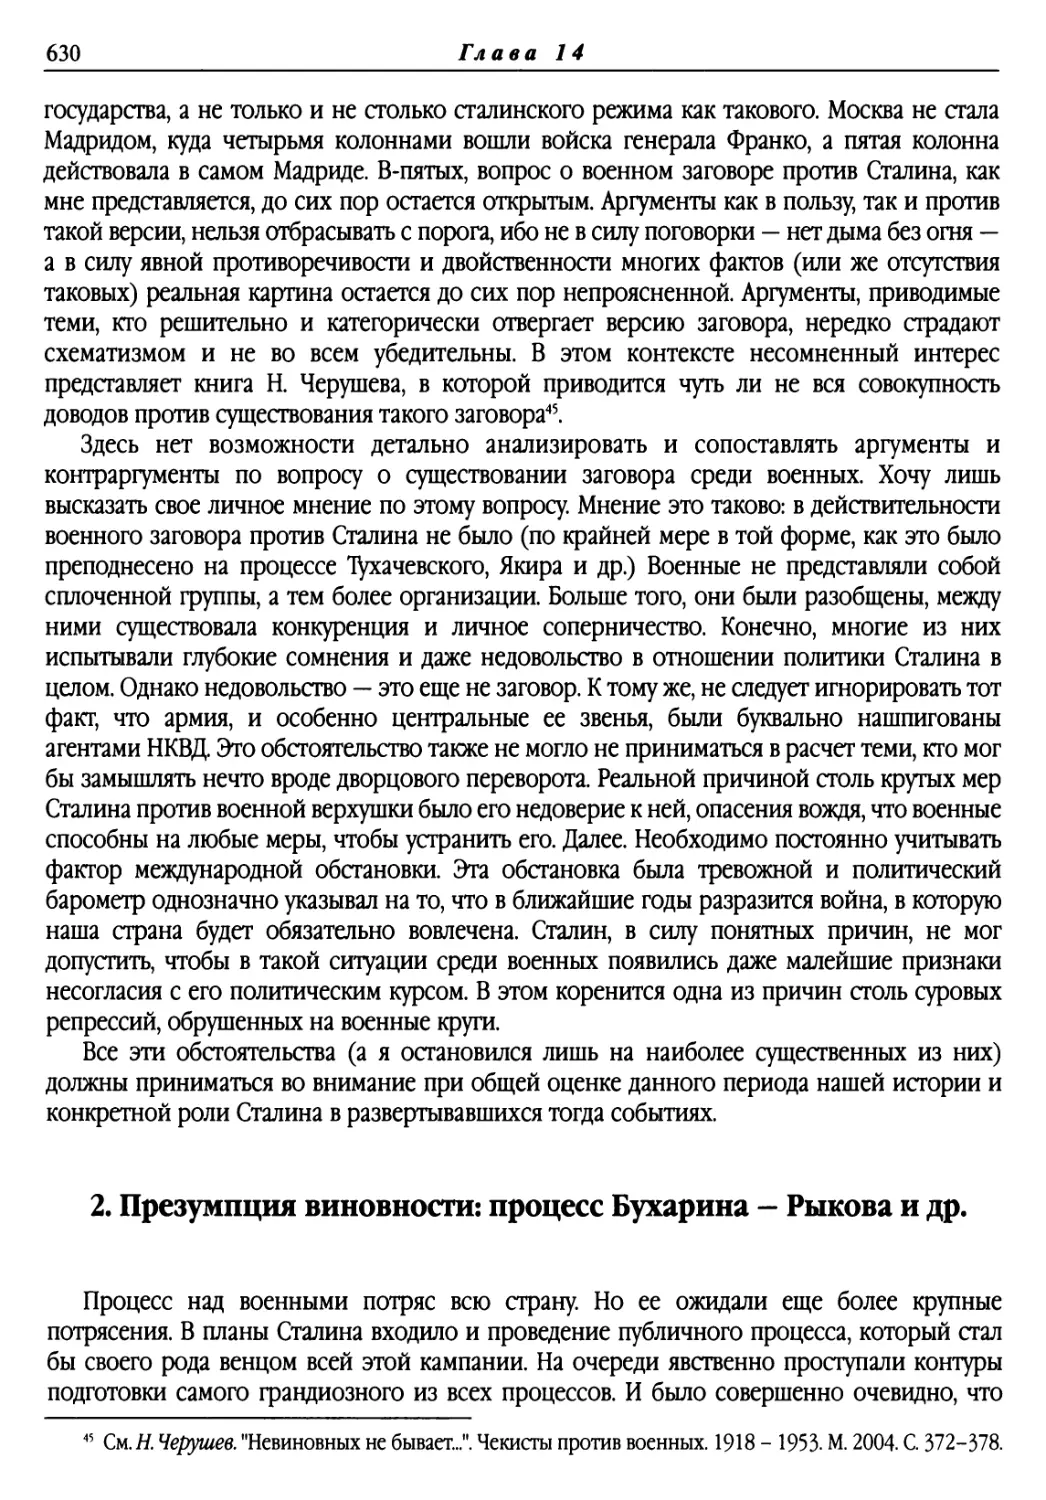 2. Презумпция виновности: процесс Бухарина — Рыкова и др.